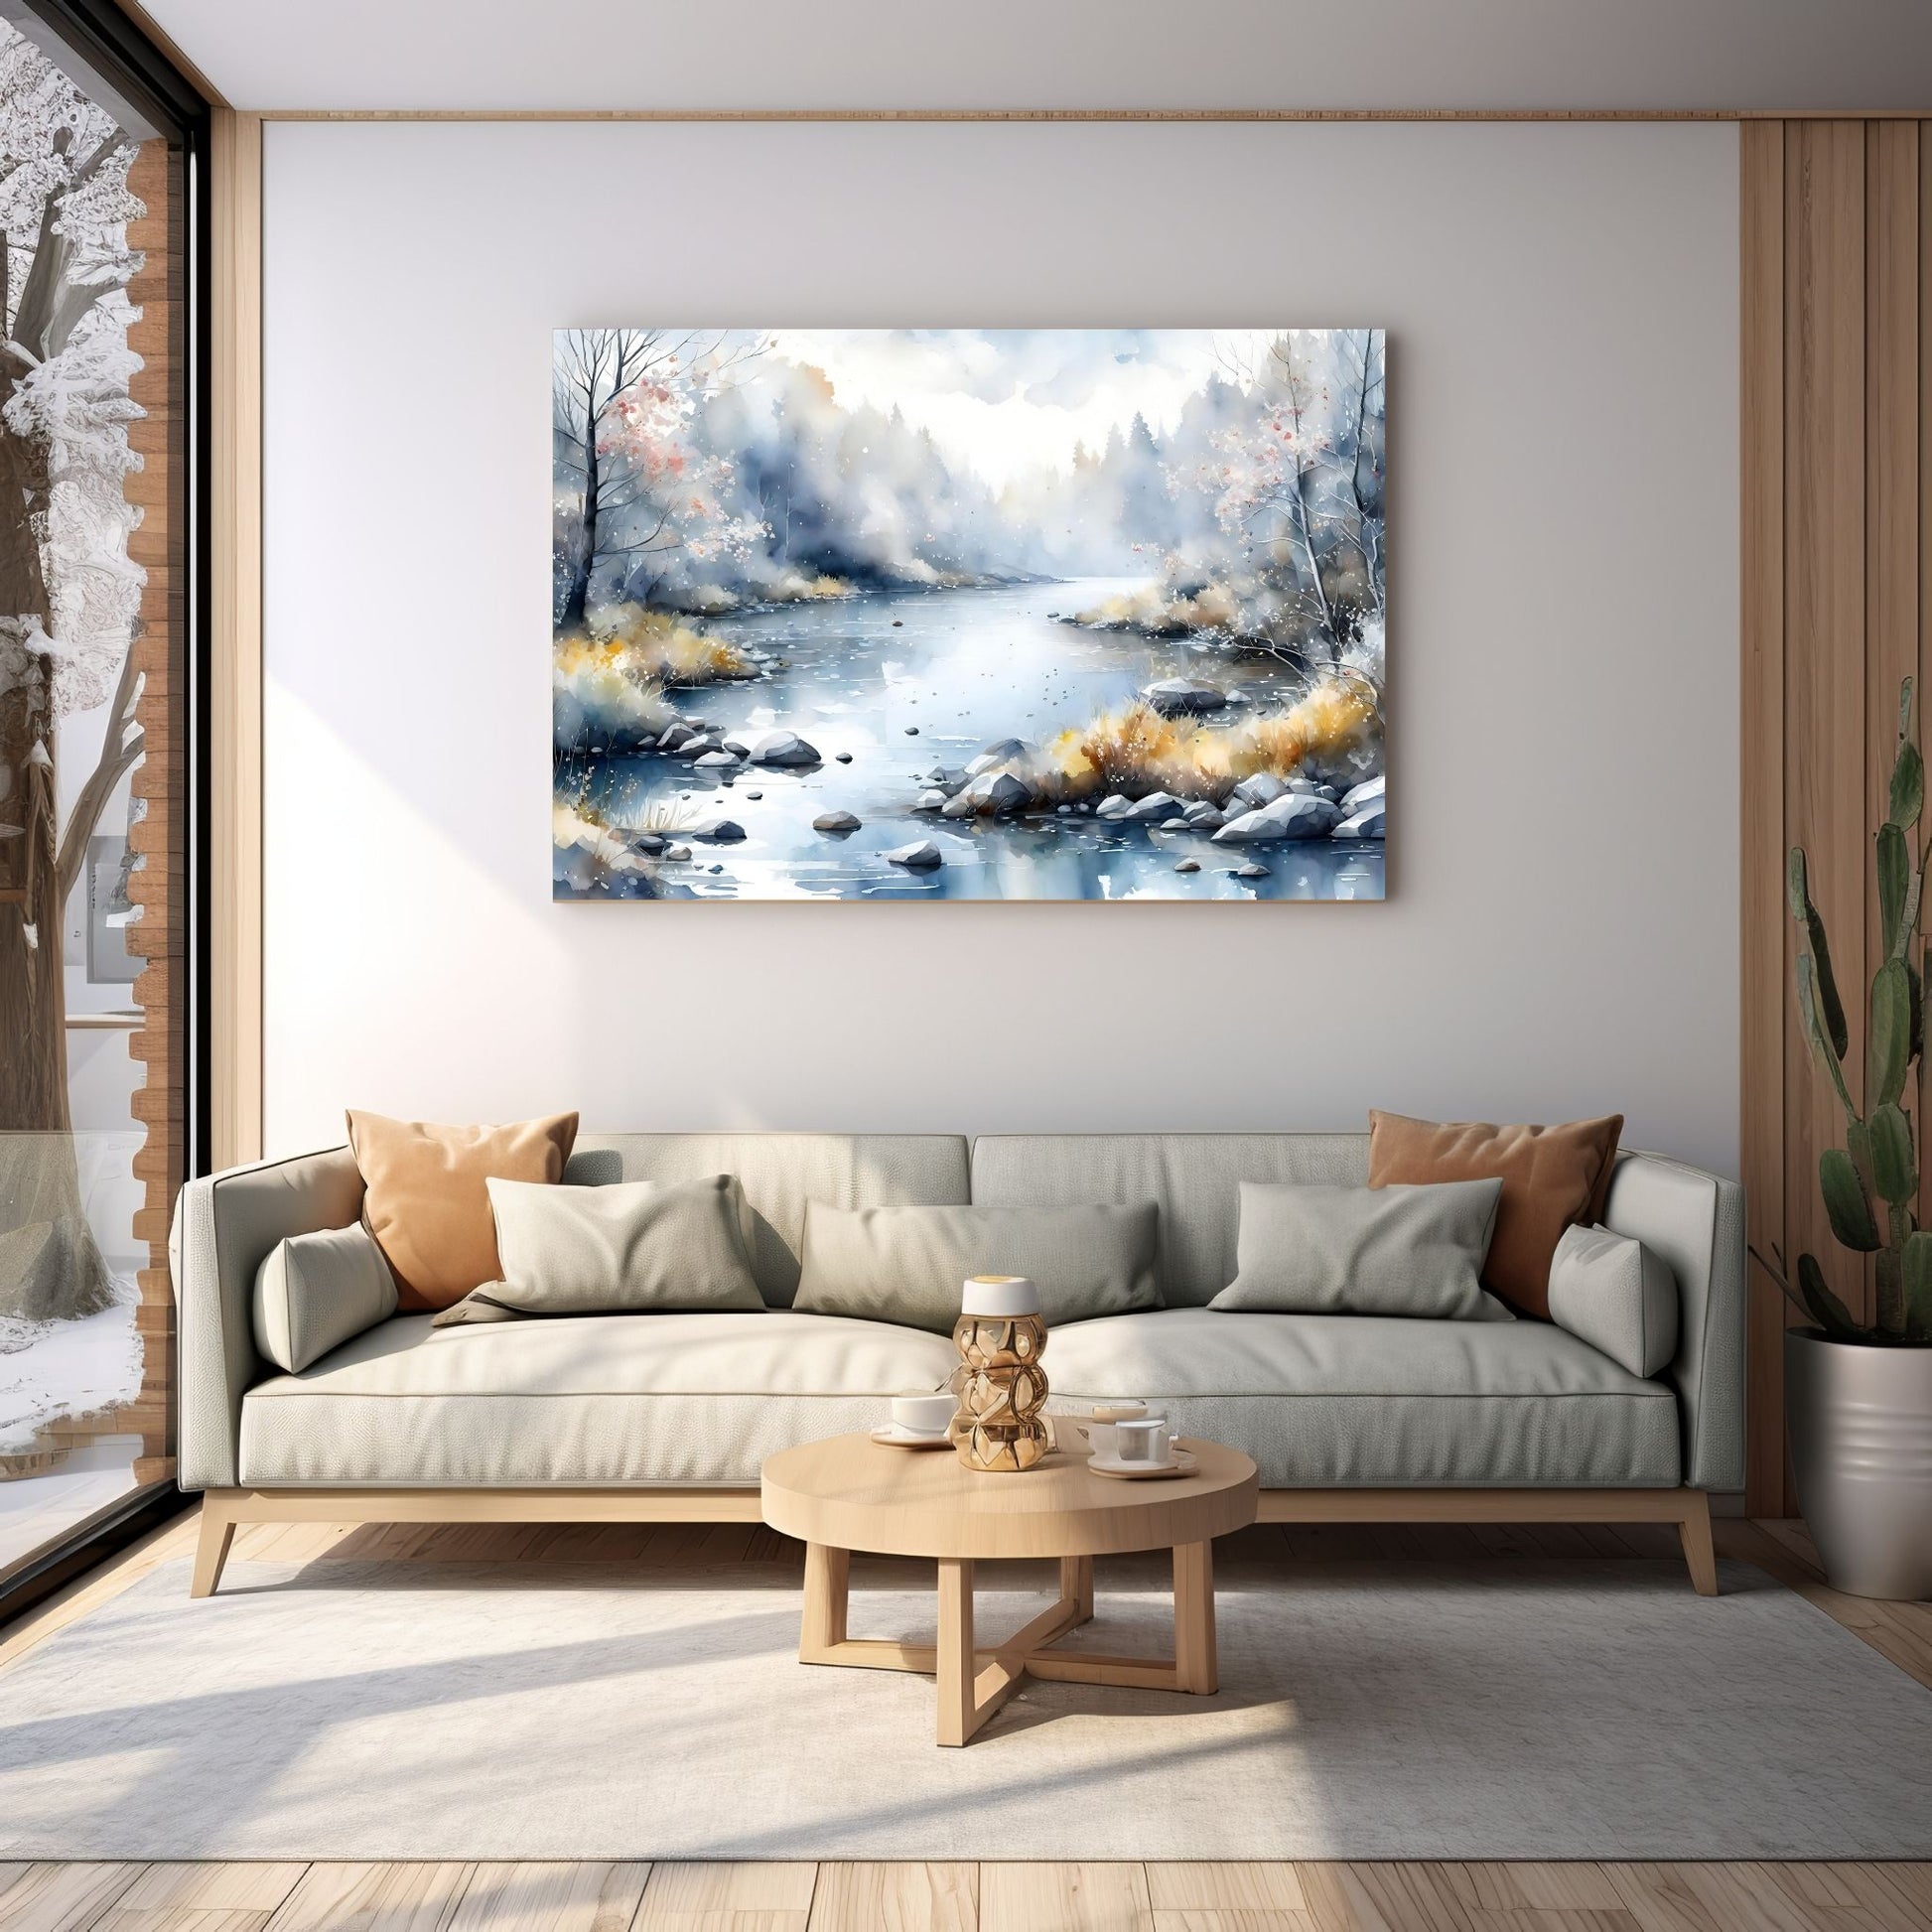 Digitalt kunstmaleri i akvarell som fanger essensen av vinterscenene med et sjarmerende landskap der snøfnugg danser i luften. Illustrasjonsfoto som viser motivet på lerret som henger over en sofa.